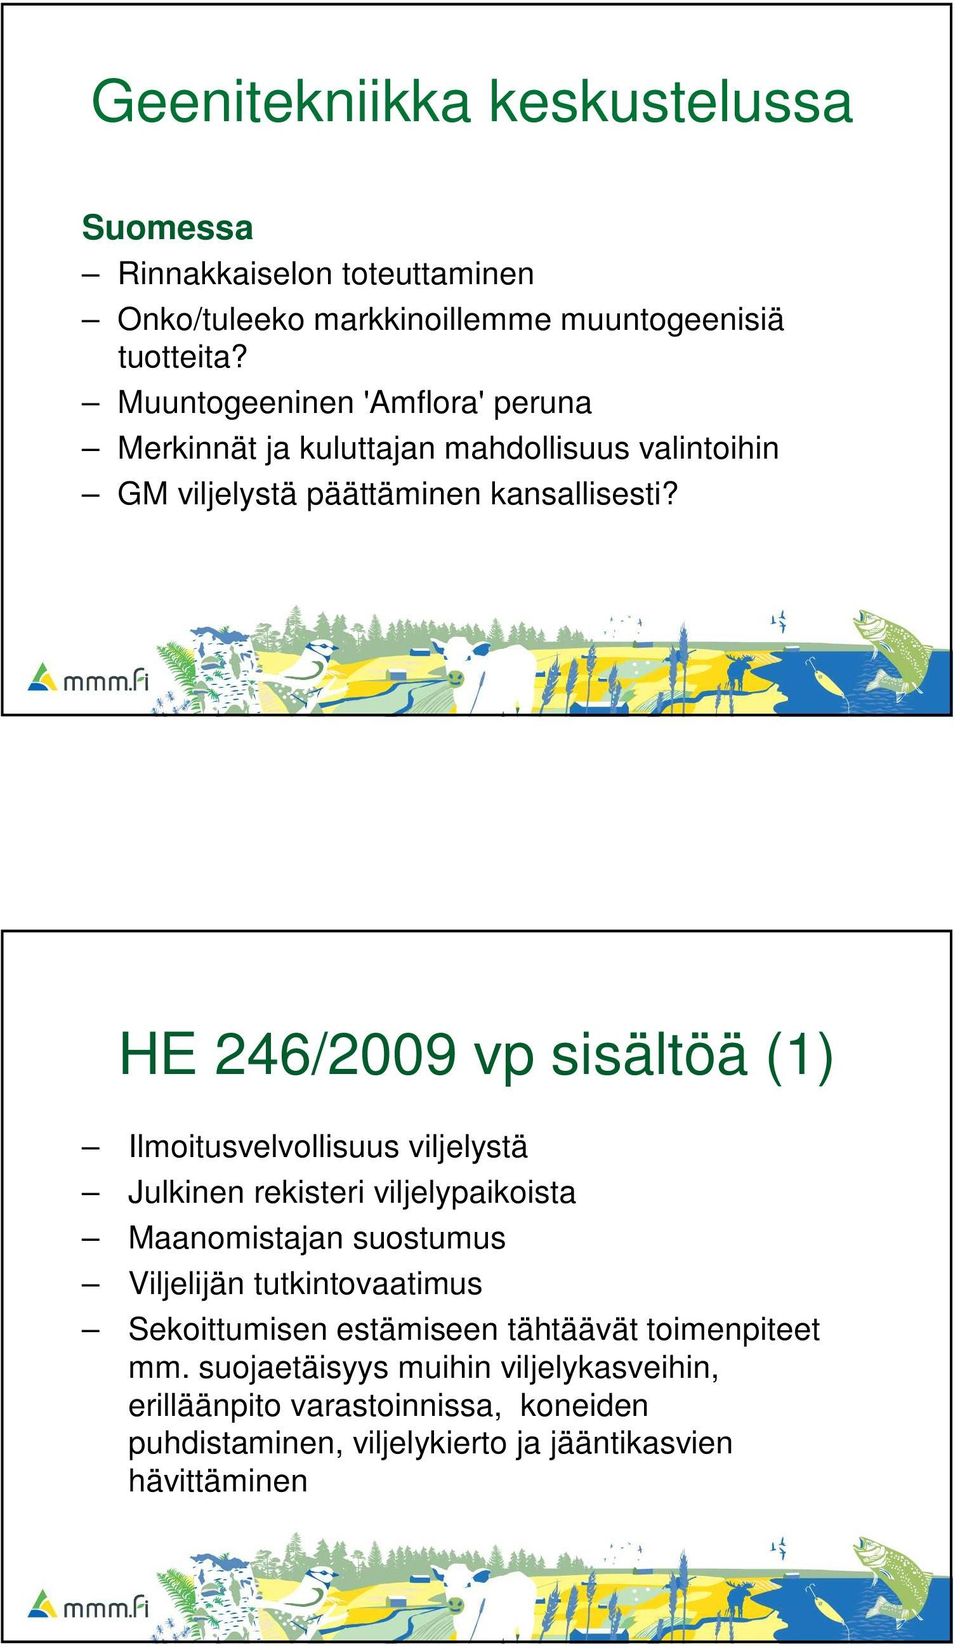 HE 246/2009 vp sisältöä (1) Ilmoitusvelvollisuus viljelystä Julkinen rekisteri viljelypaikoista Maanomistajan suostumus Viljelijän